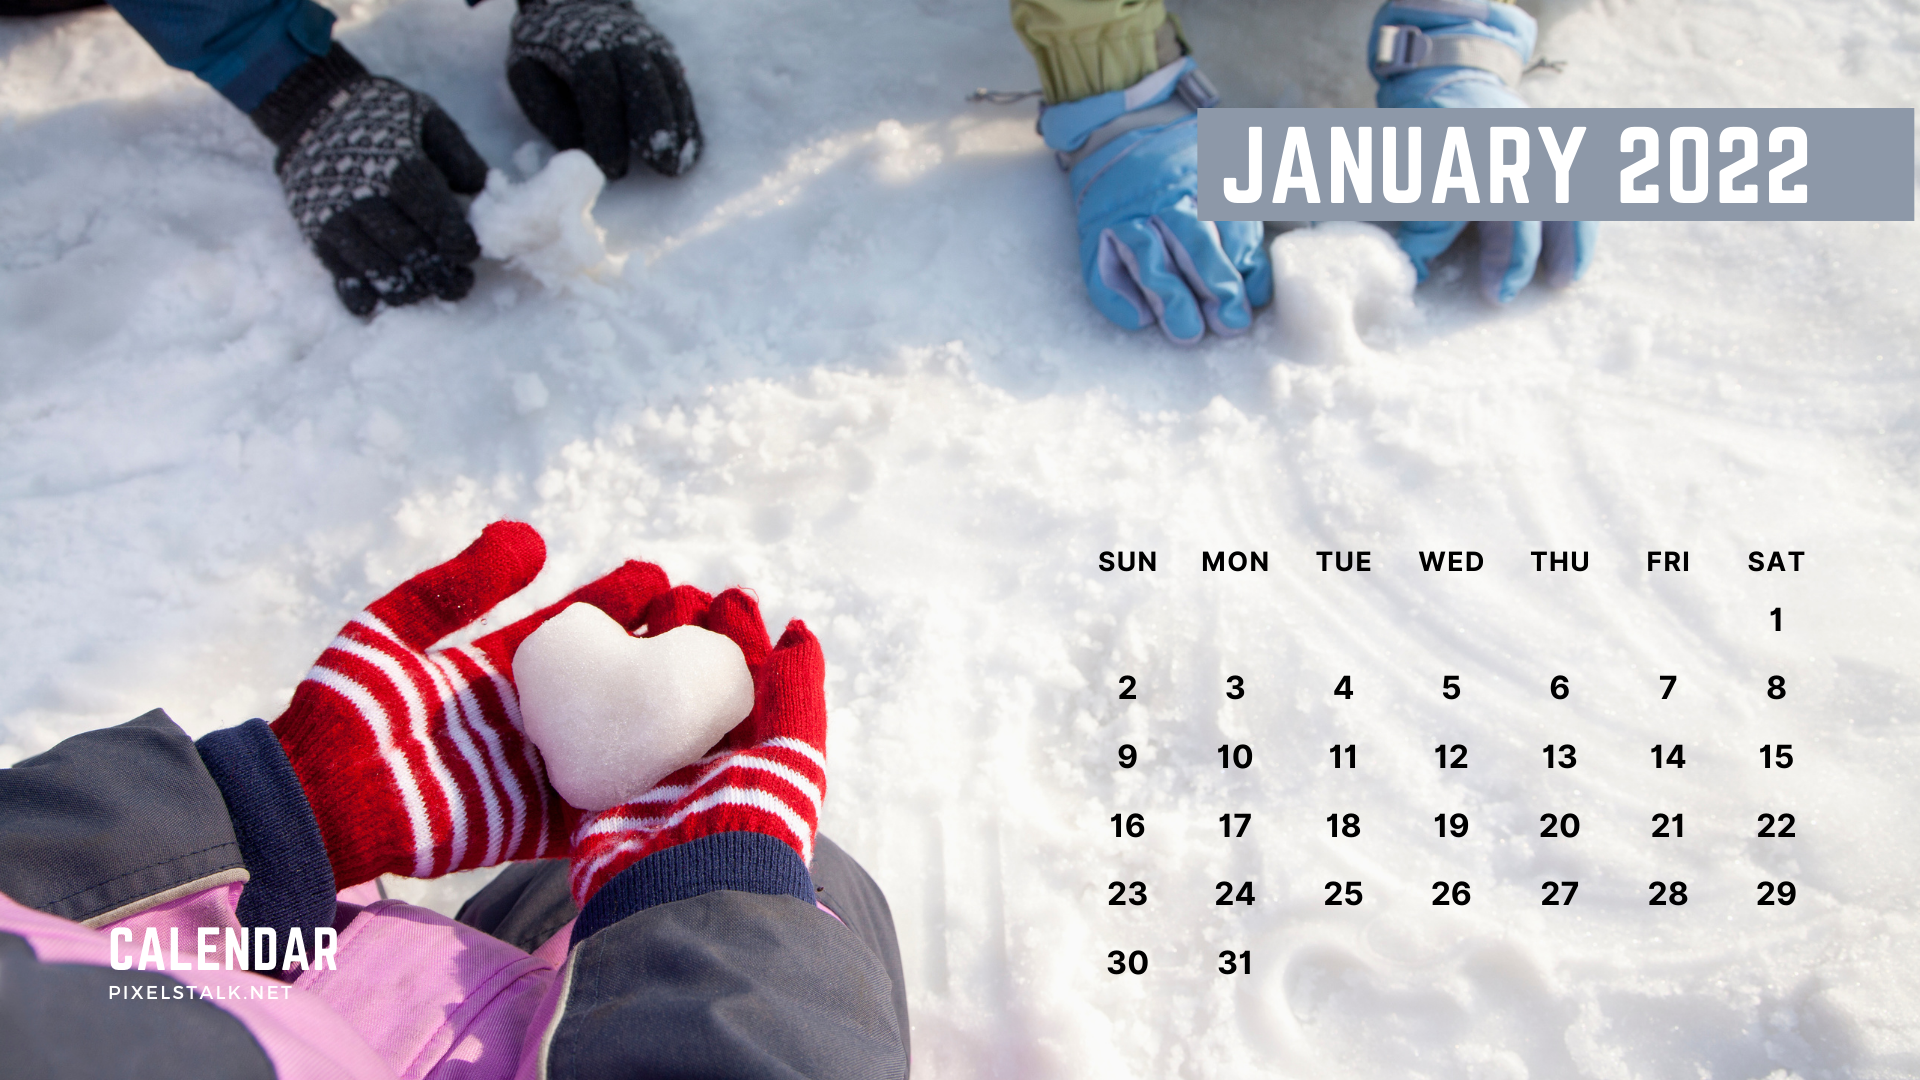 Hãy bắt đầu năm mới bằng lịch tháng 1 năm 2022 đầy tính thẩm mỹ và sự sống động. Lịch tháng 1 năm 2022 sẽ giúp bạn lên kế hoạch cho một năm mới đầy niềm vui và thành công. Hãy xem qua hình ảnh lịch tháng 1 năm 2022 để cảm nhận được nét đẹp độc đáo của chiếc lịch này.